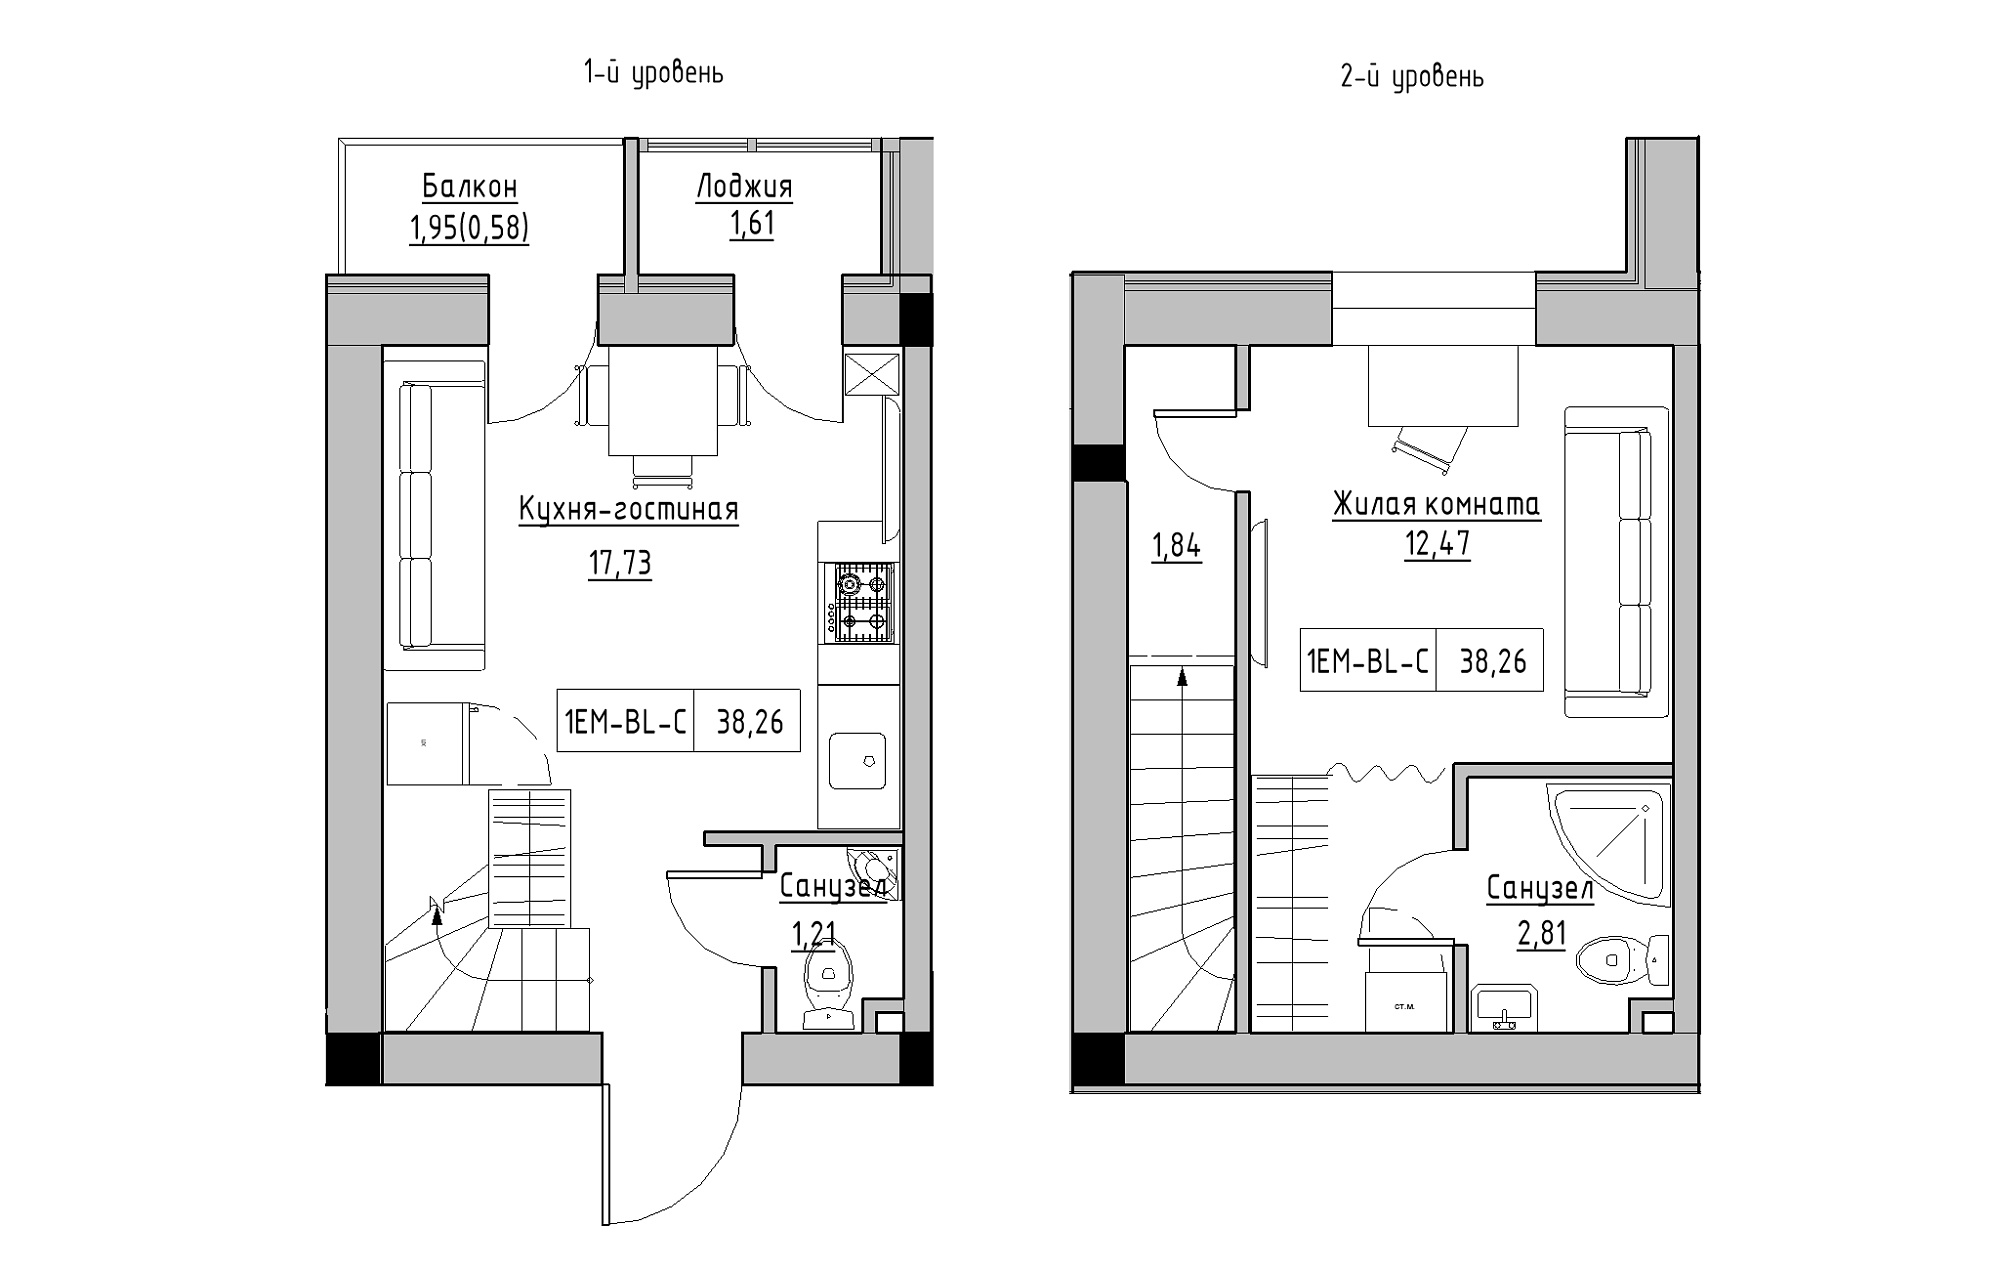 Planning 2-lvl flats area 38.26m2, KS-018-05/0005.